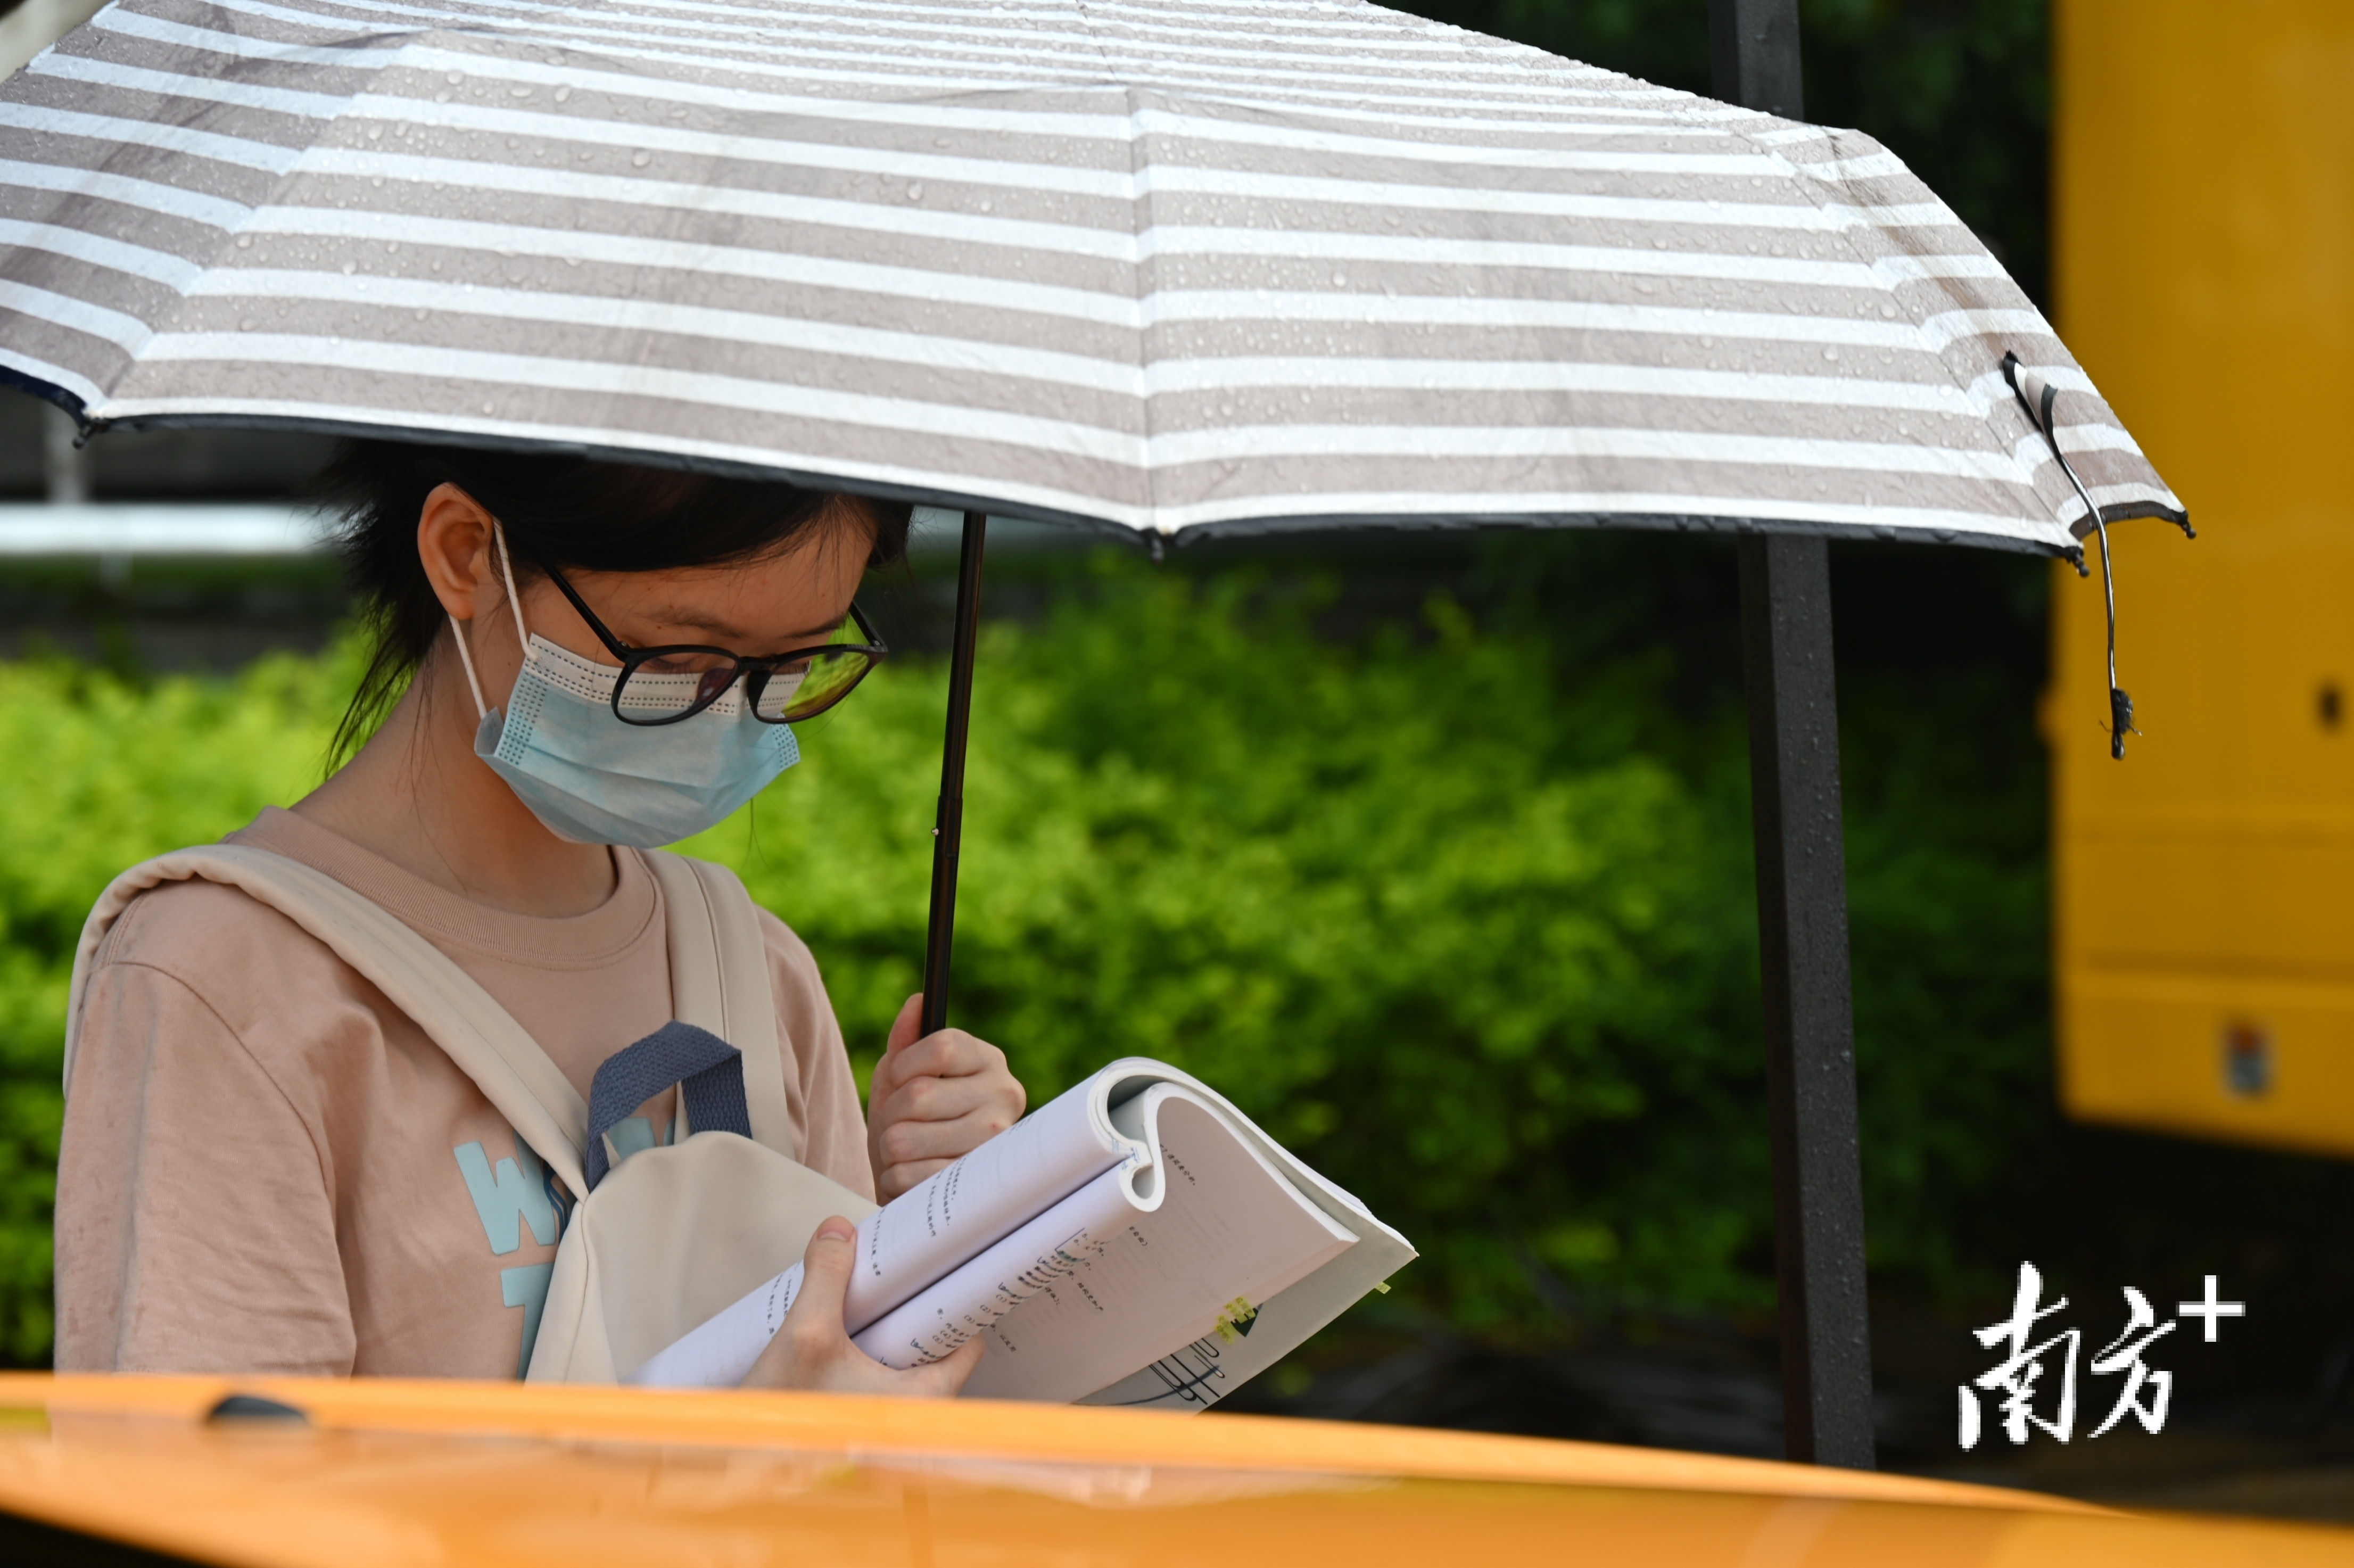 连州中学考点一角，撑伞的考生正抓紧时间温习考点知识。张晓欣 摄